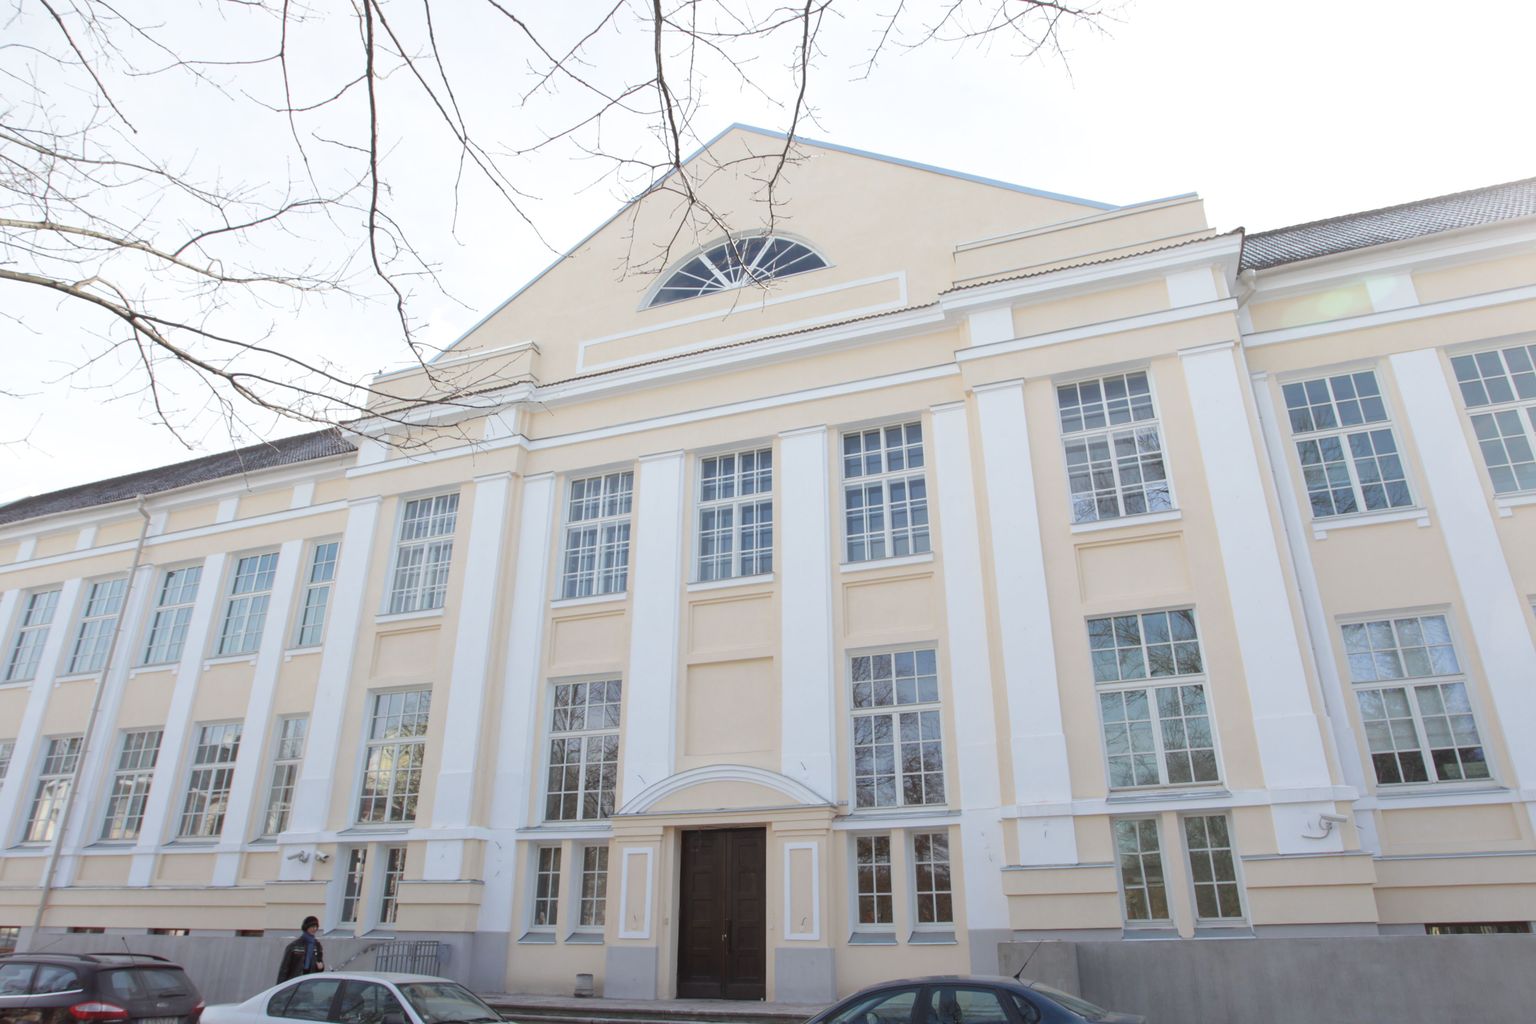 Äsja mälestiseks kuulutatud Vanemuise 46 hoone Tartus Vanemuise 46, kus tegutseb Tartu ülikooli loodusmuuseum ning zooloogia ja geoloogia instituut.